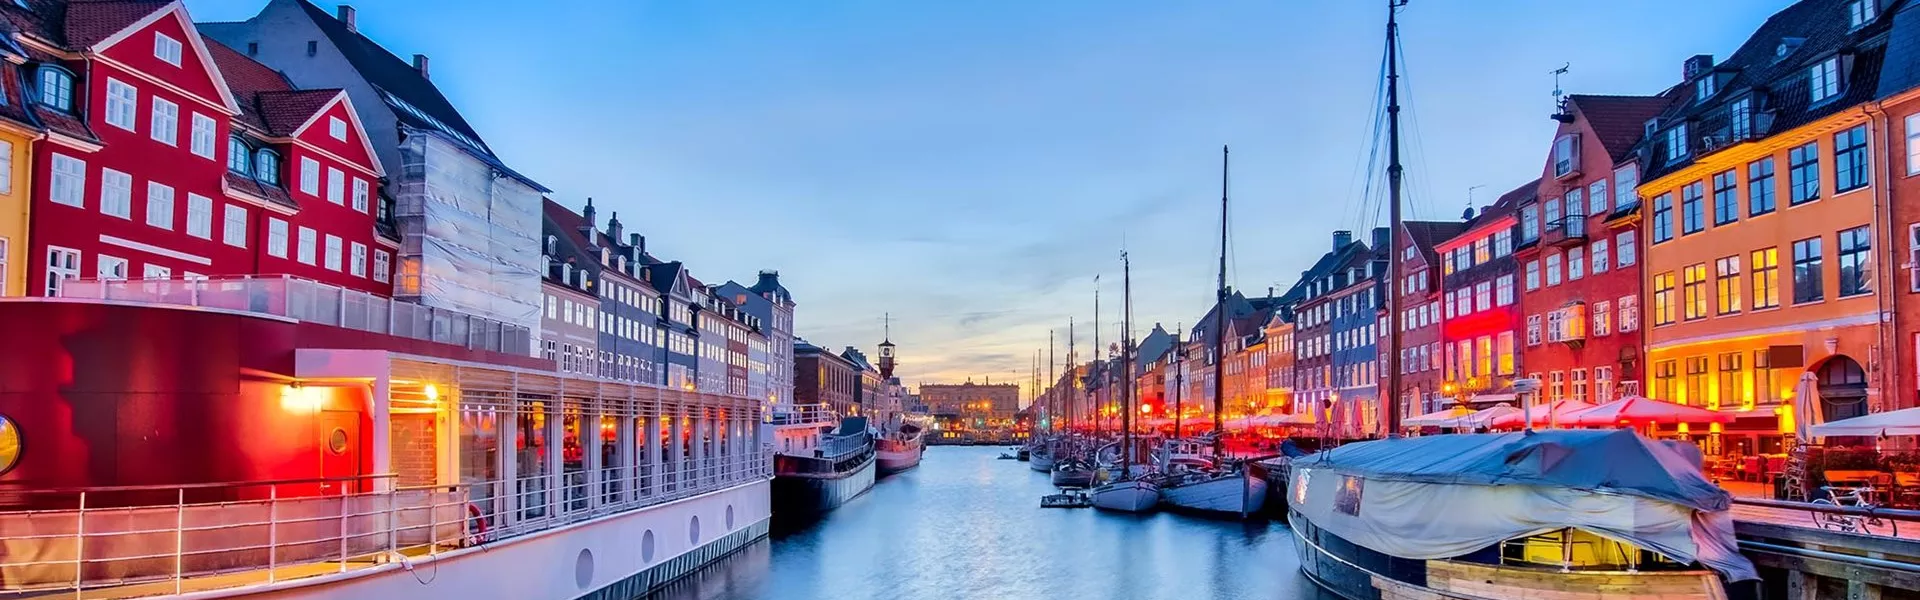 Colourful houses in port in Copenhagen, Denmark